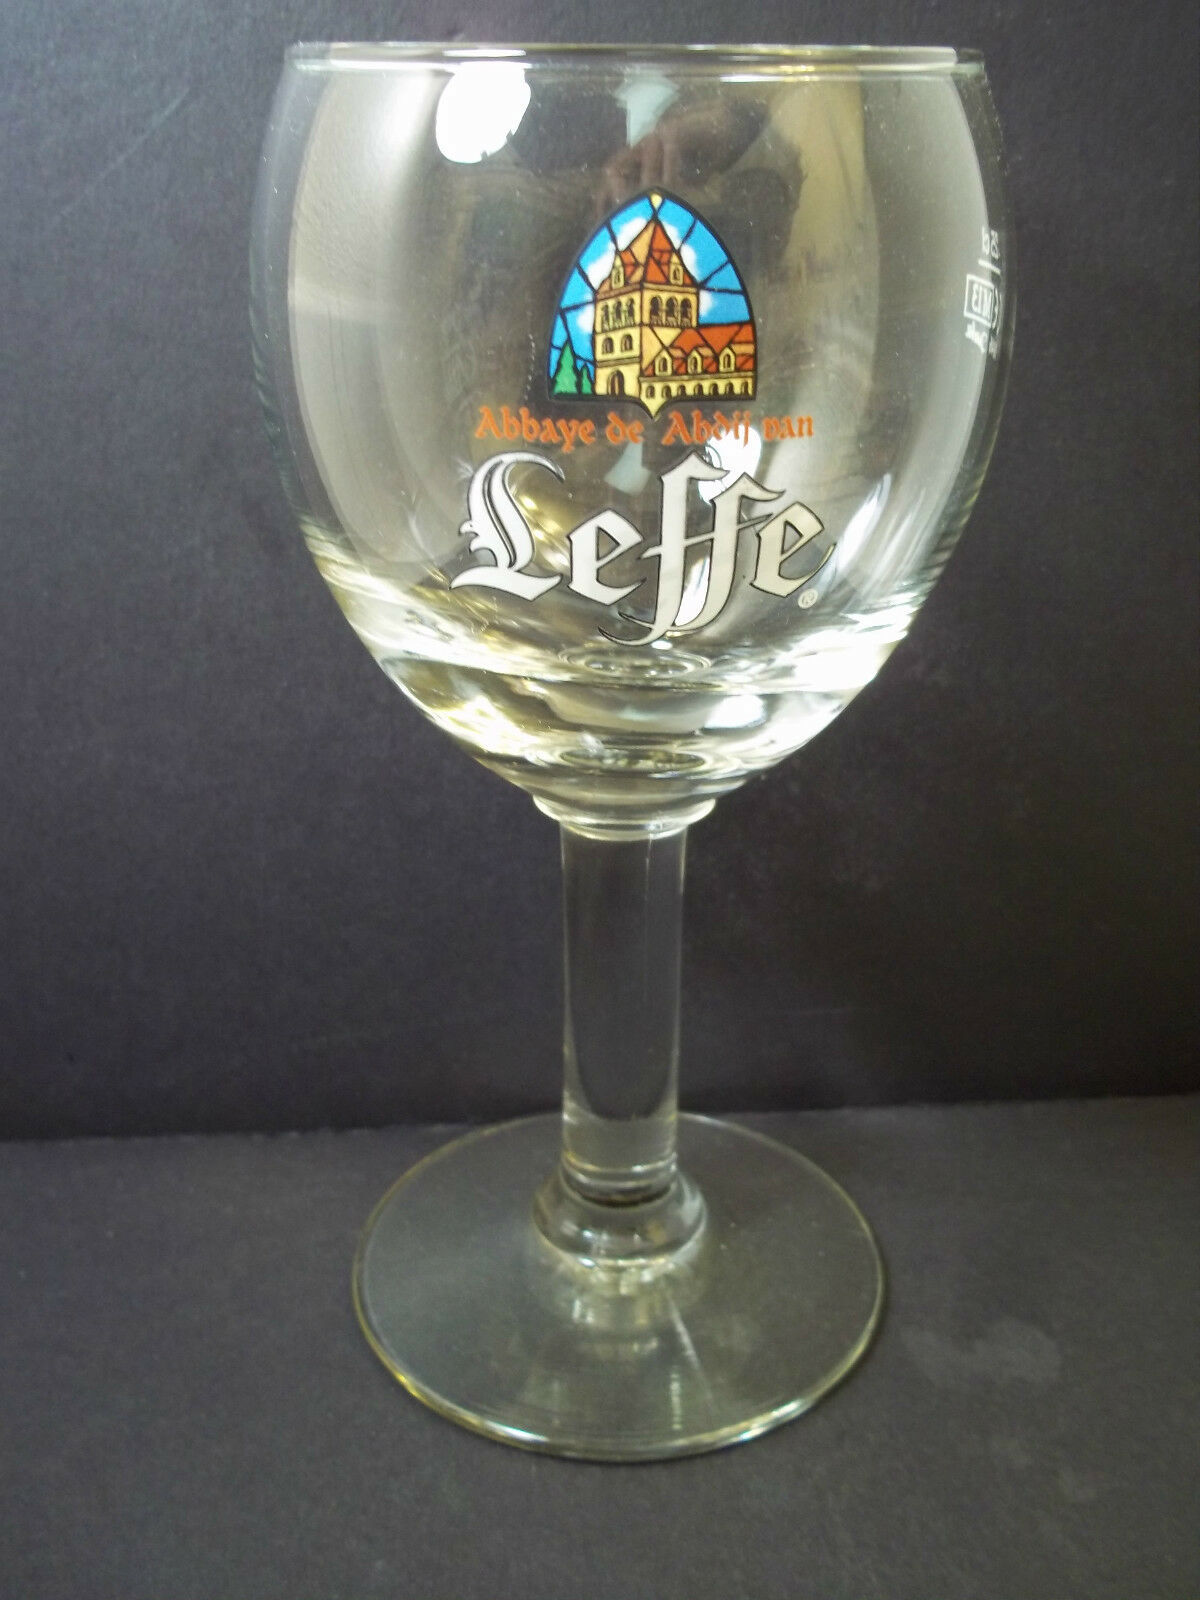 Primary image for Leffe Belgian Blonde Beer blown glass goblet  .25L  12 oz Abbaye de Abdij van